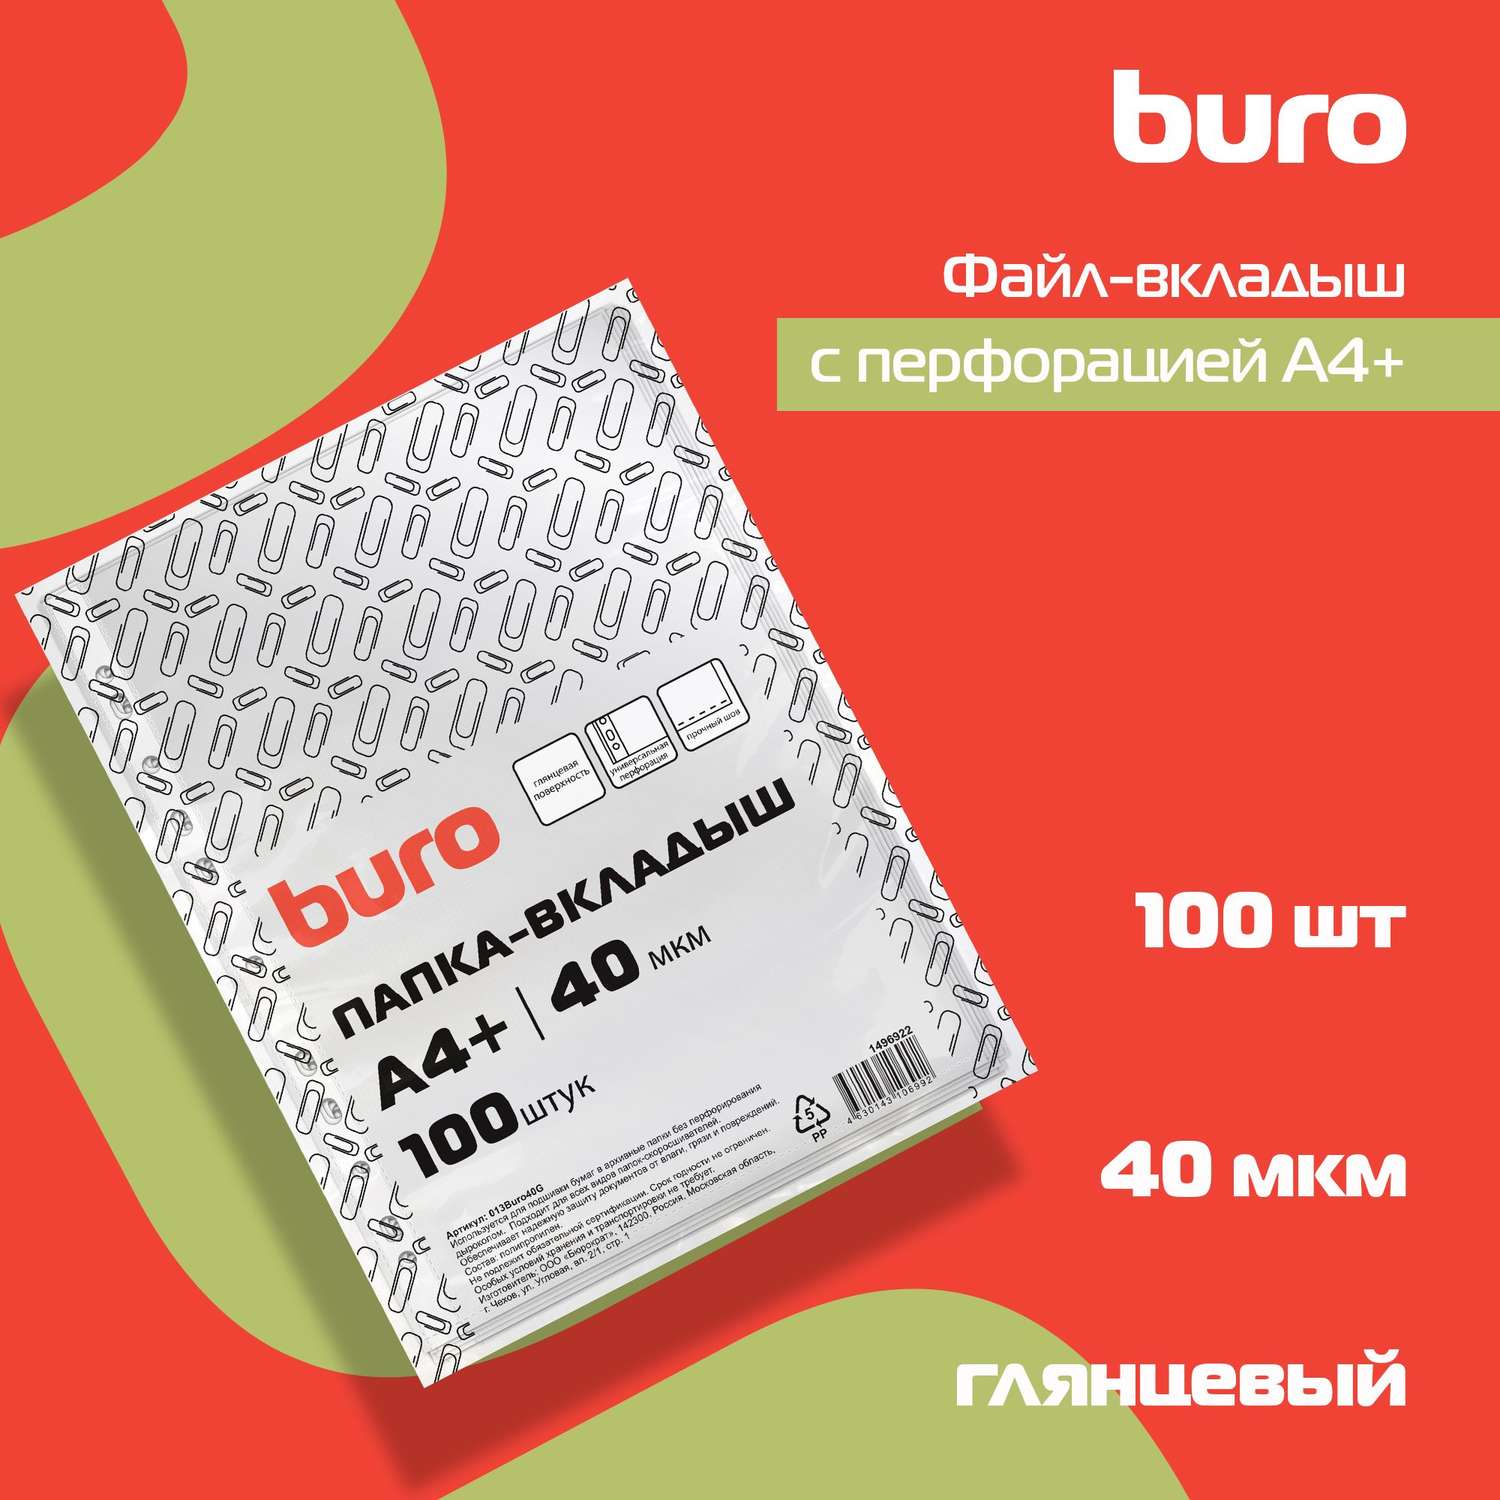 Файлы-вкладыши Buro глянцевые А4+ 40мкм упаковка 100 шт - фото 5